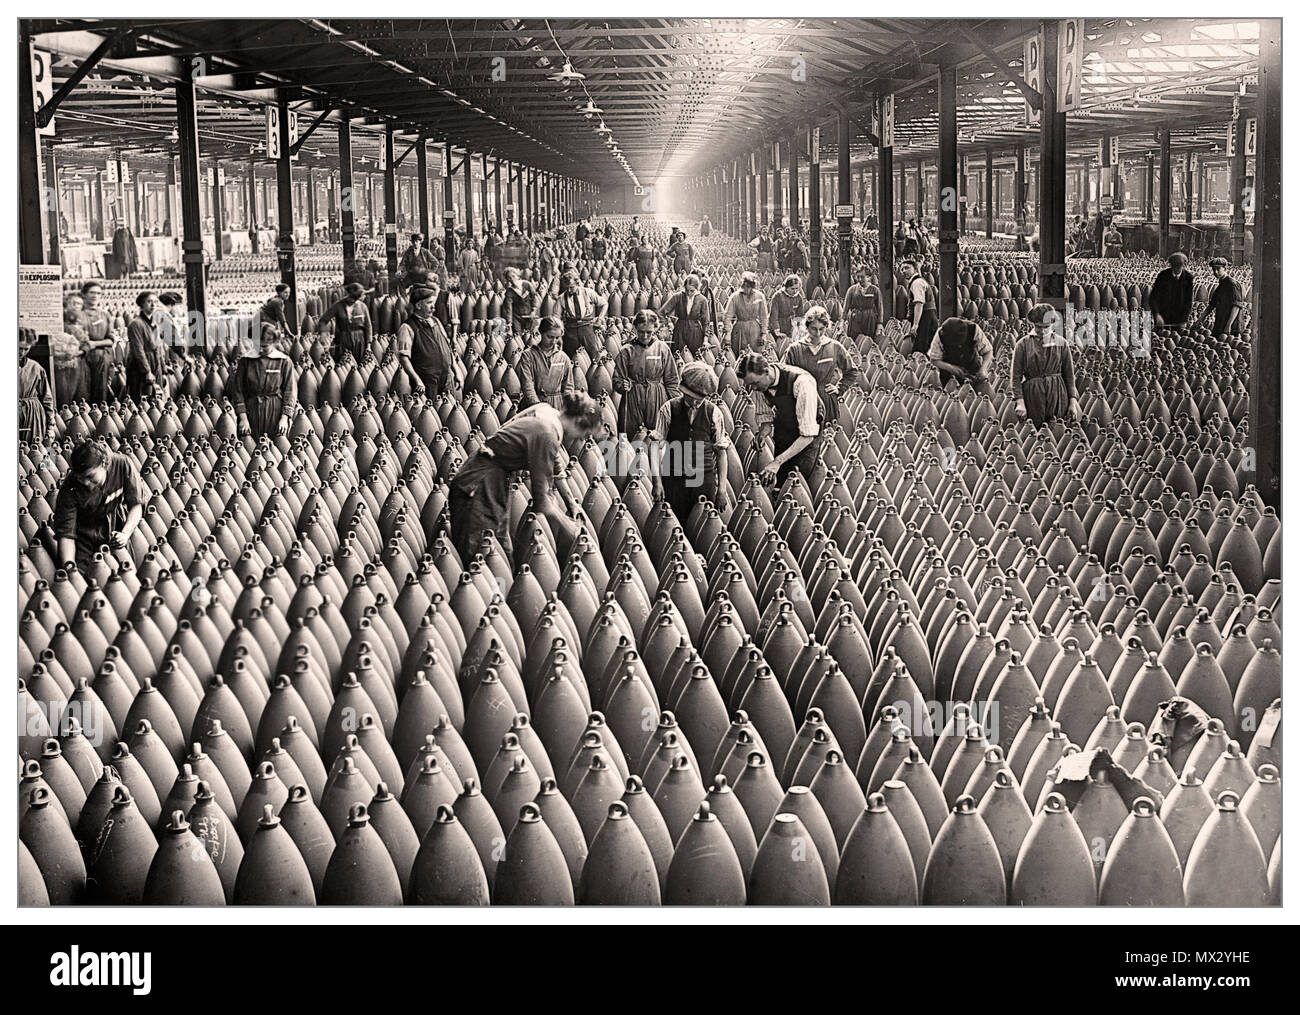 1. Weltkrieg Shells Amunition Factory Großbritannien die Chilwell Munitions-Abfüllfabrik, Großbritannien, 1. Weltkrieg Mehr als 19 Millionen Granaten wurden hier von 10,000 Arbeitern zwischen 1915 und 1918 während des 1. Weltkriegs mit Sprengstoff gefüllt. Die Fabrik füllte während des Ersten Weltkriegs, des Ersten Weltkriegs, mehr als die Hälfte aller britischen Granaten. Stockfoto